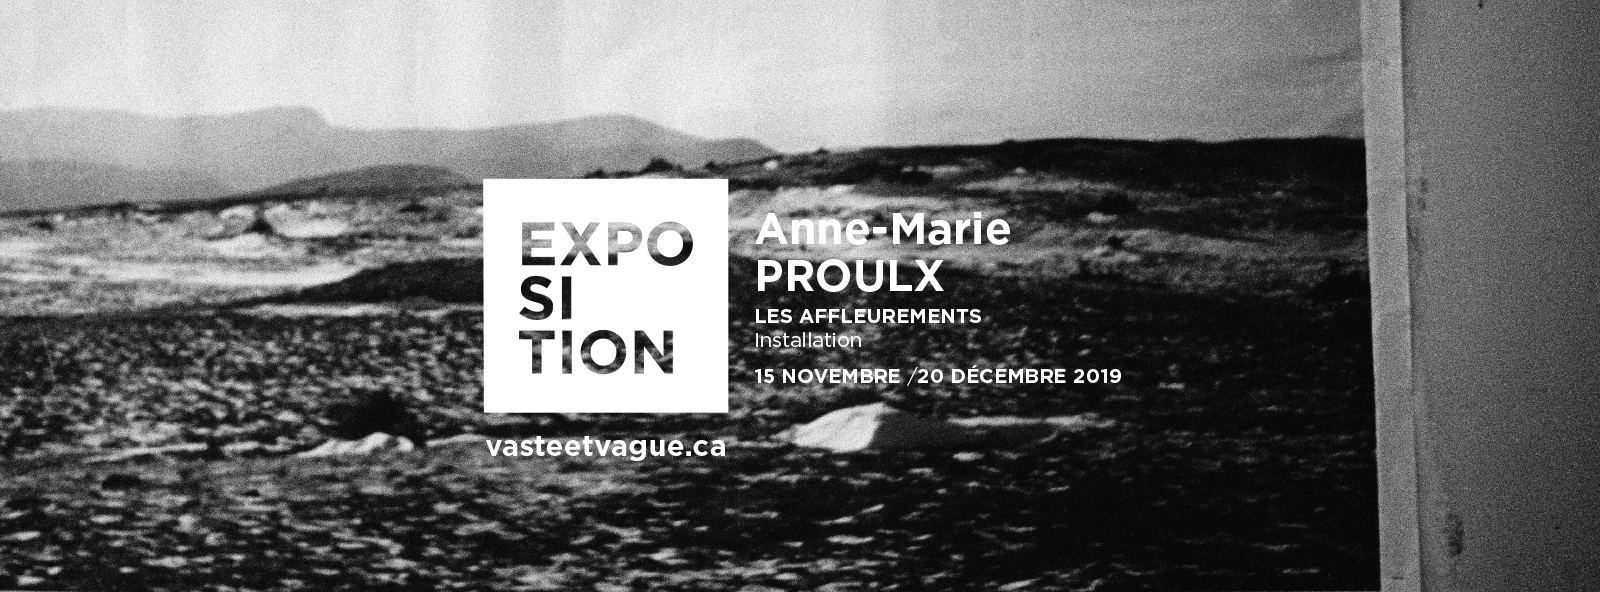 Anne-Marie PROULX | LES AFFLEUREMENTS | Installation